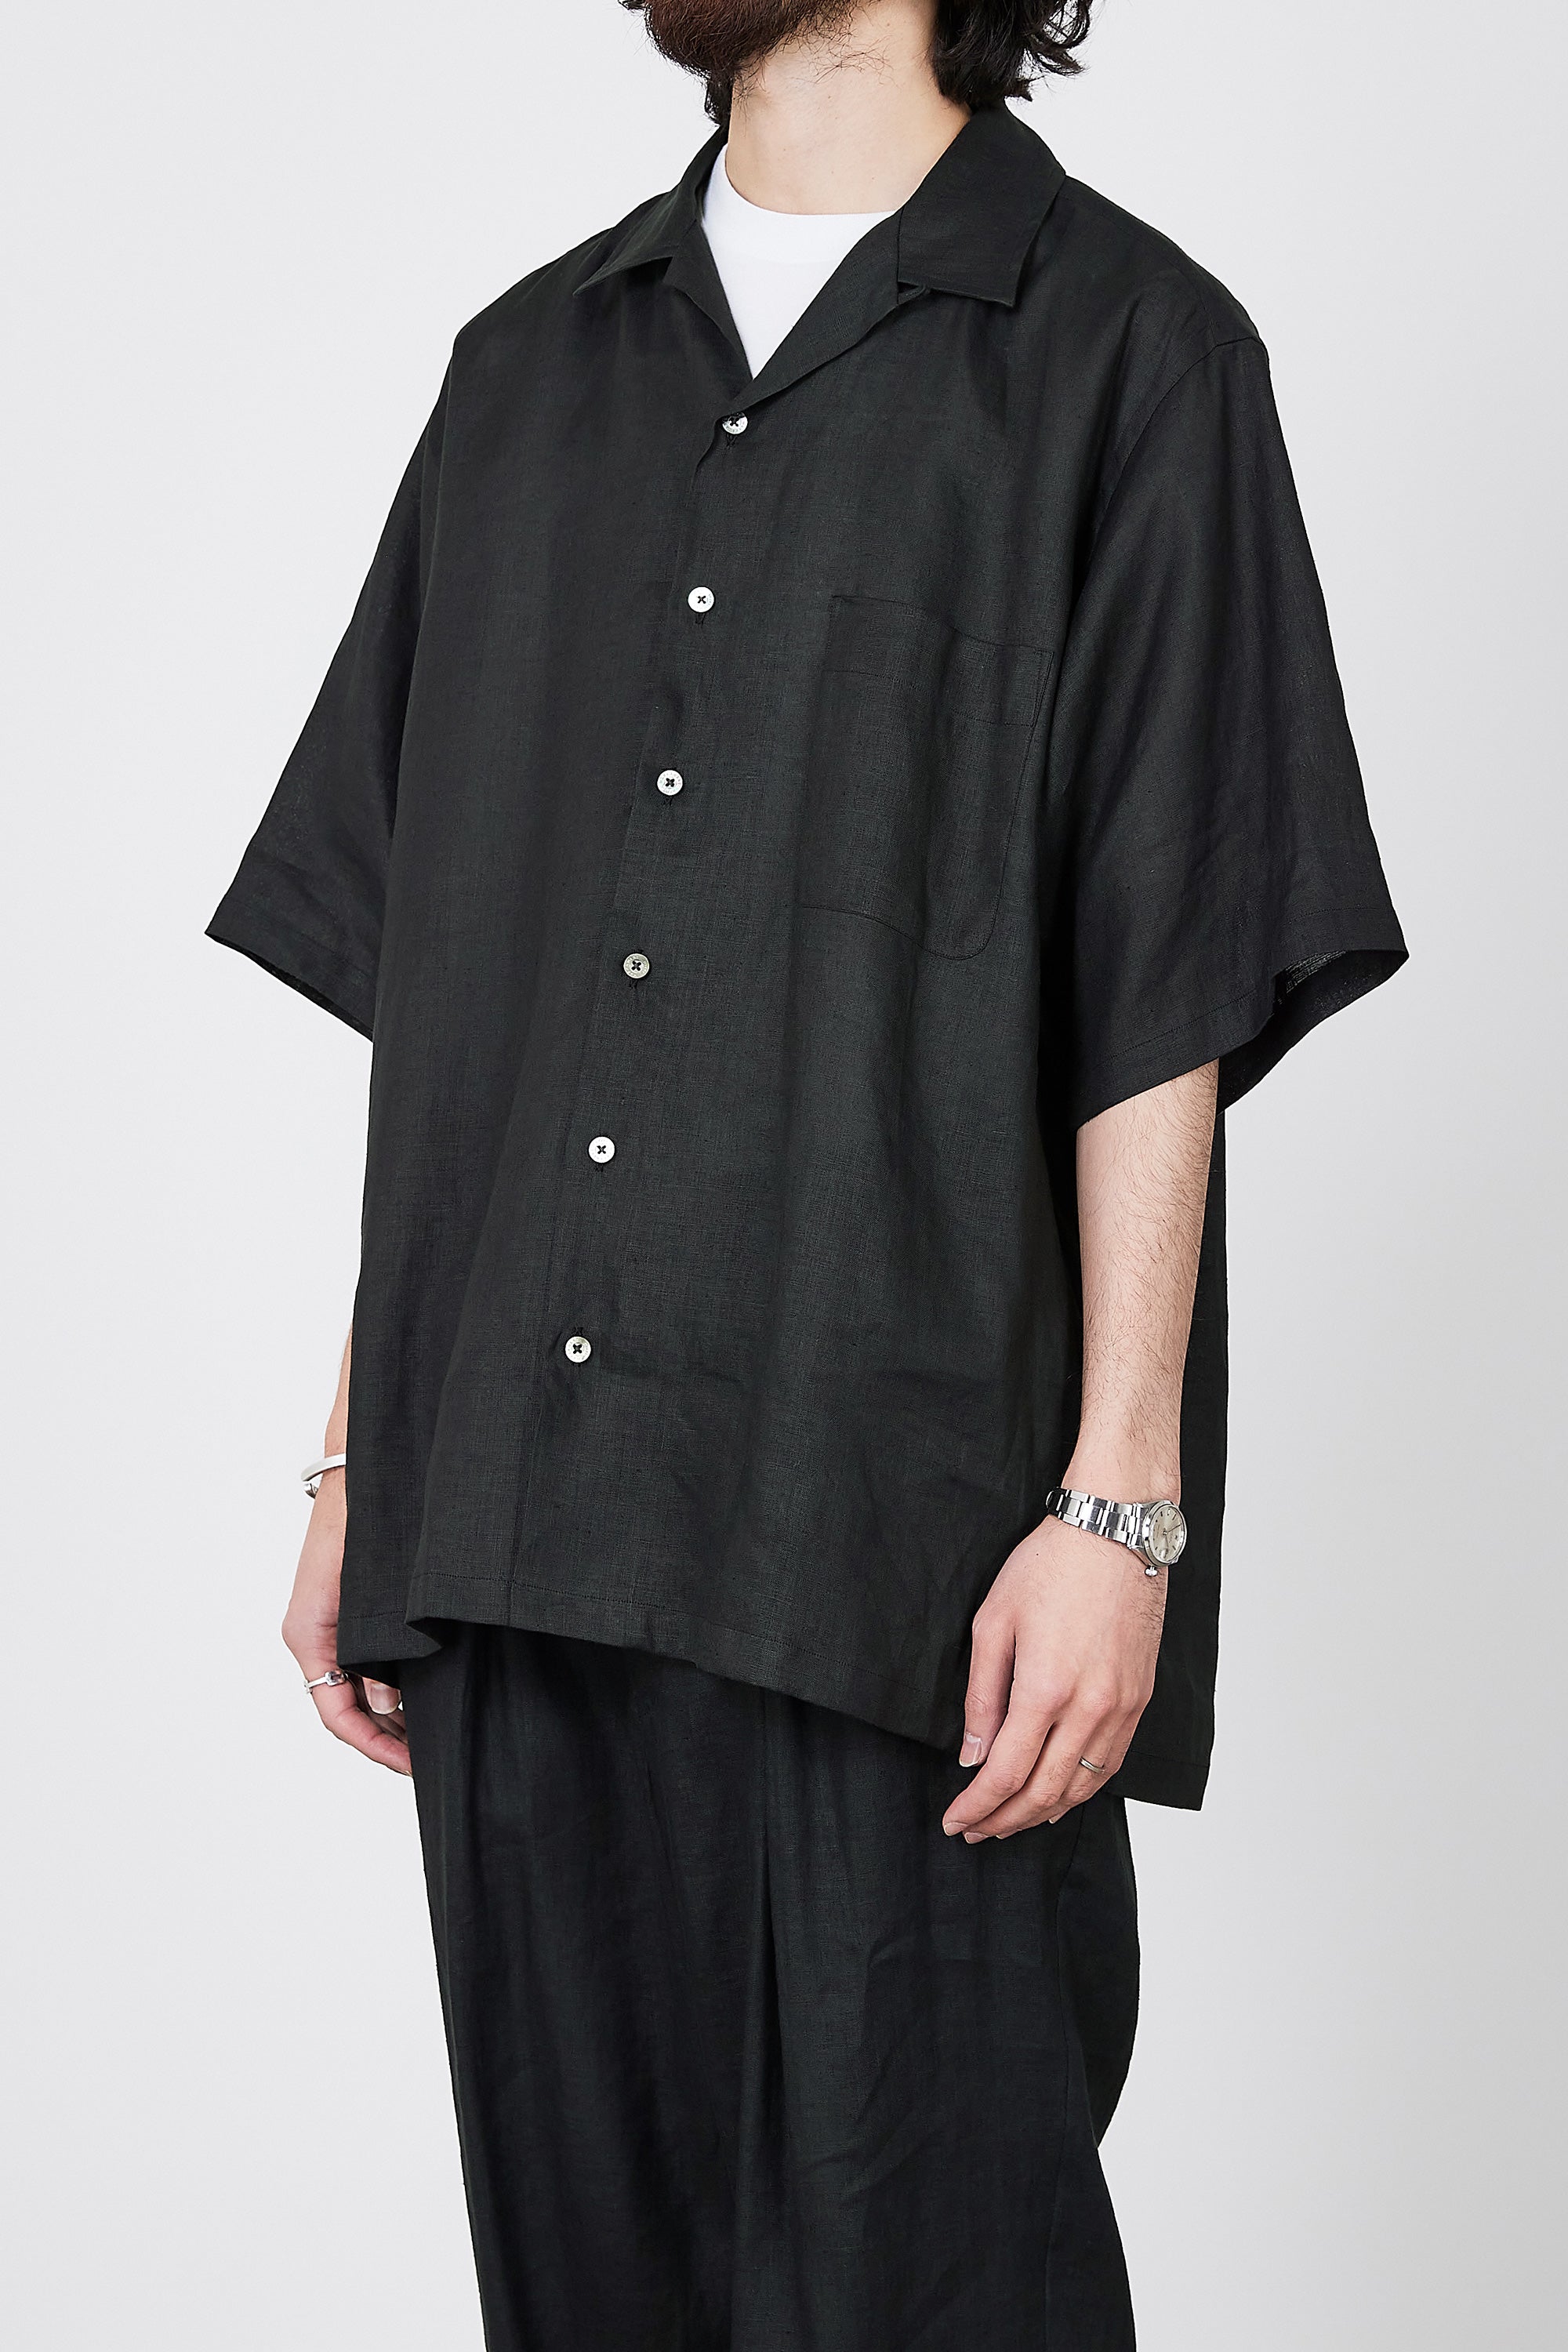 ヘンプ細布 / オープンカラーシャツ S/S, Black – MARKAWARE